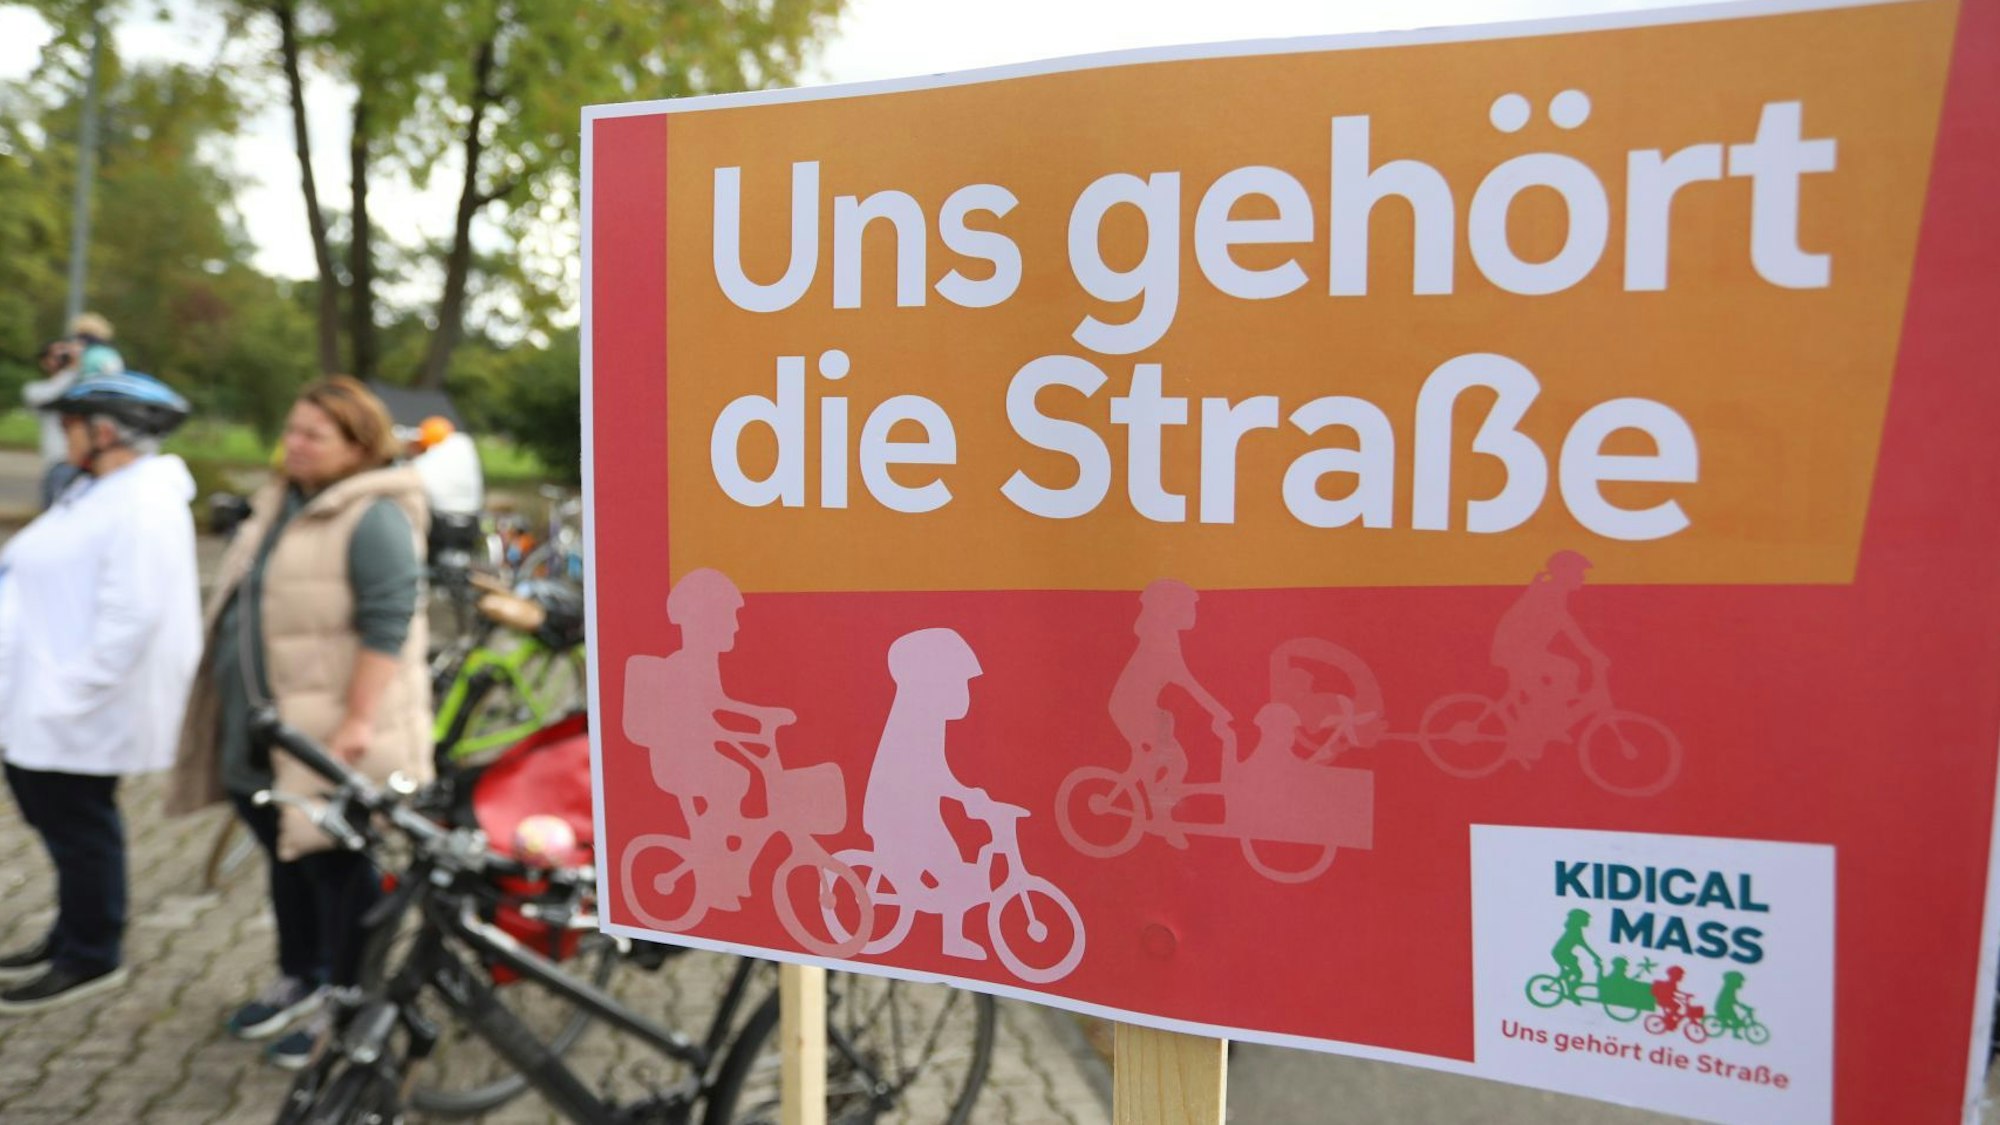 „Uns gehört die Straße“ steht auf einem Plakat, das während der Demonstration an einem Fahrrad befestigt war.